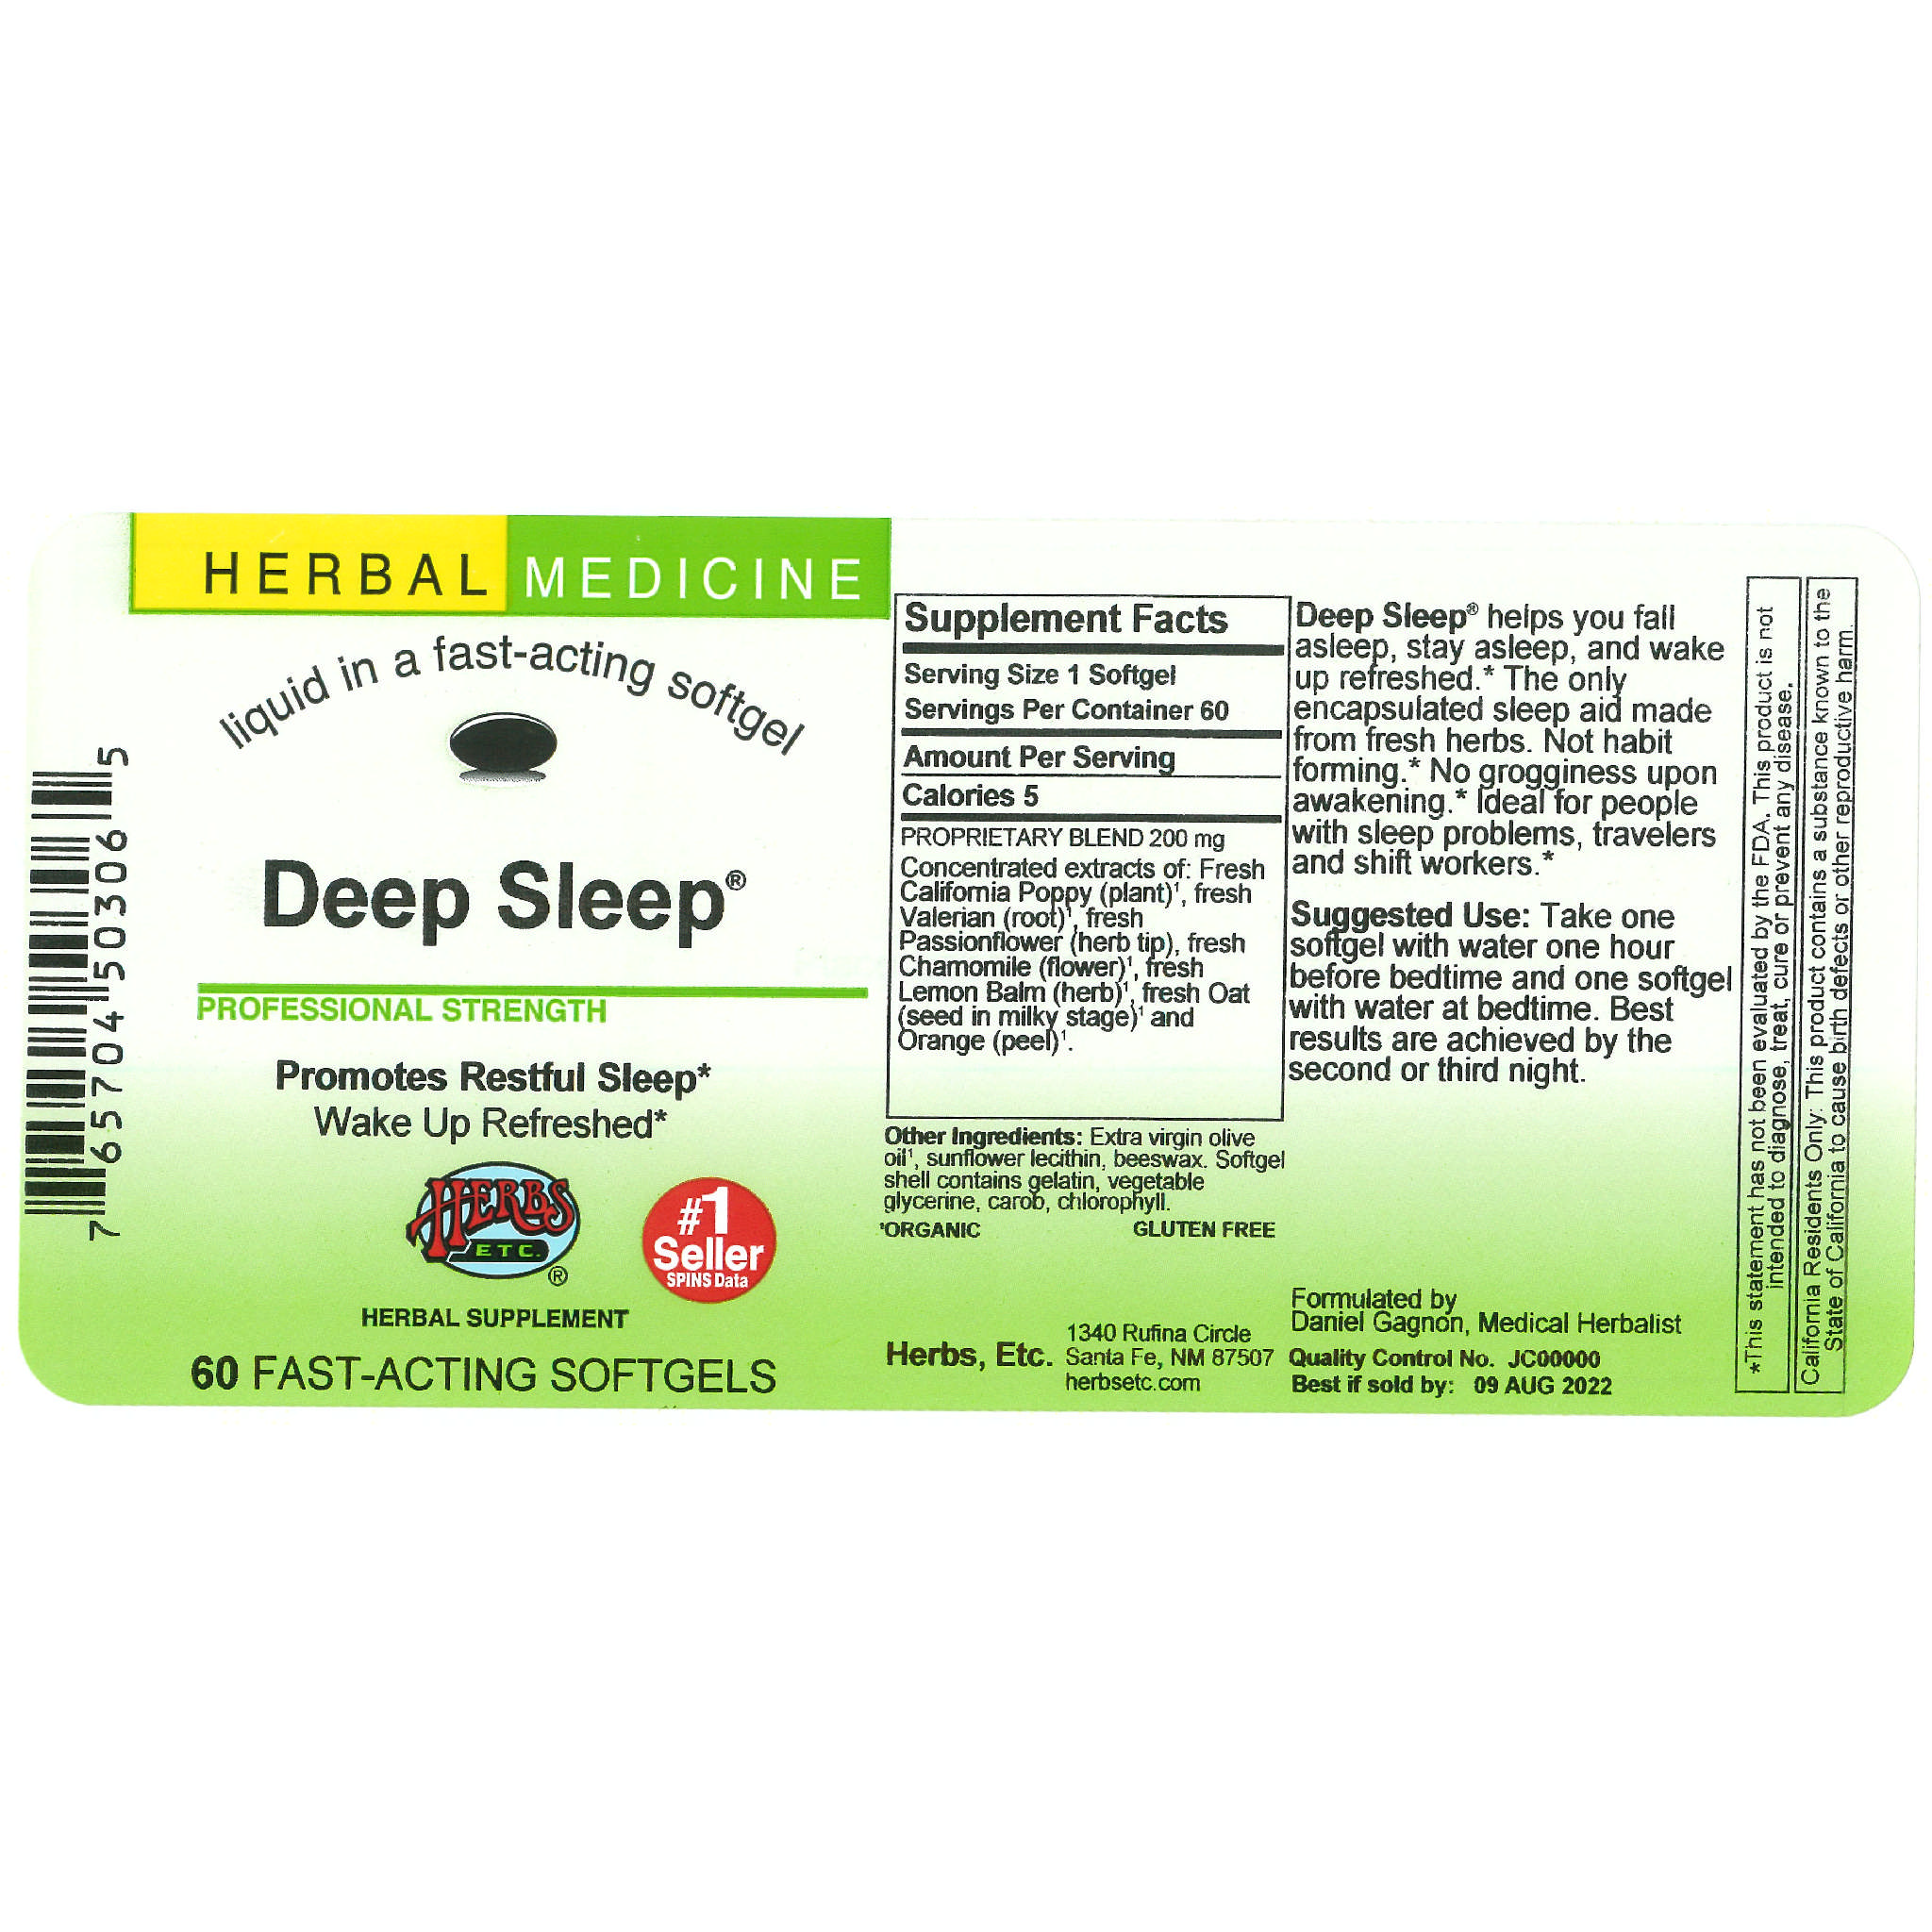 Herbs Etc - Deep Sleep